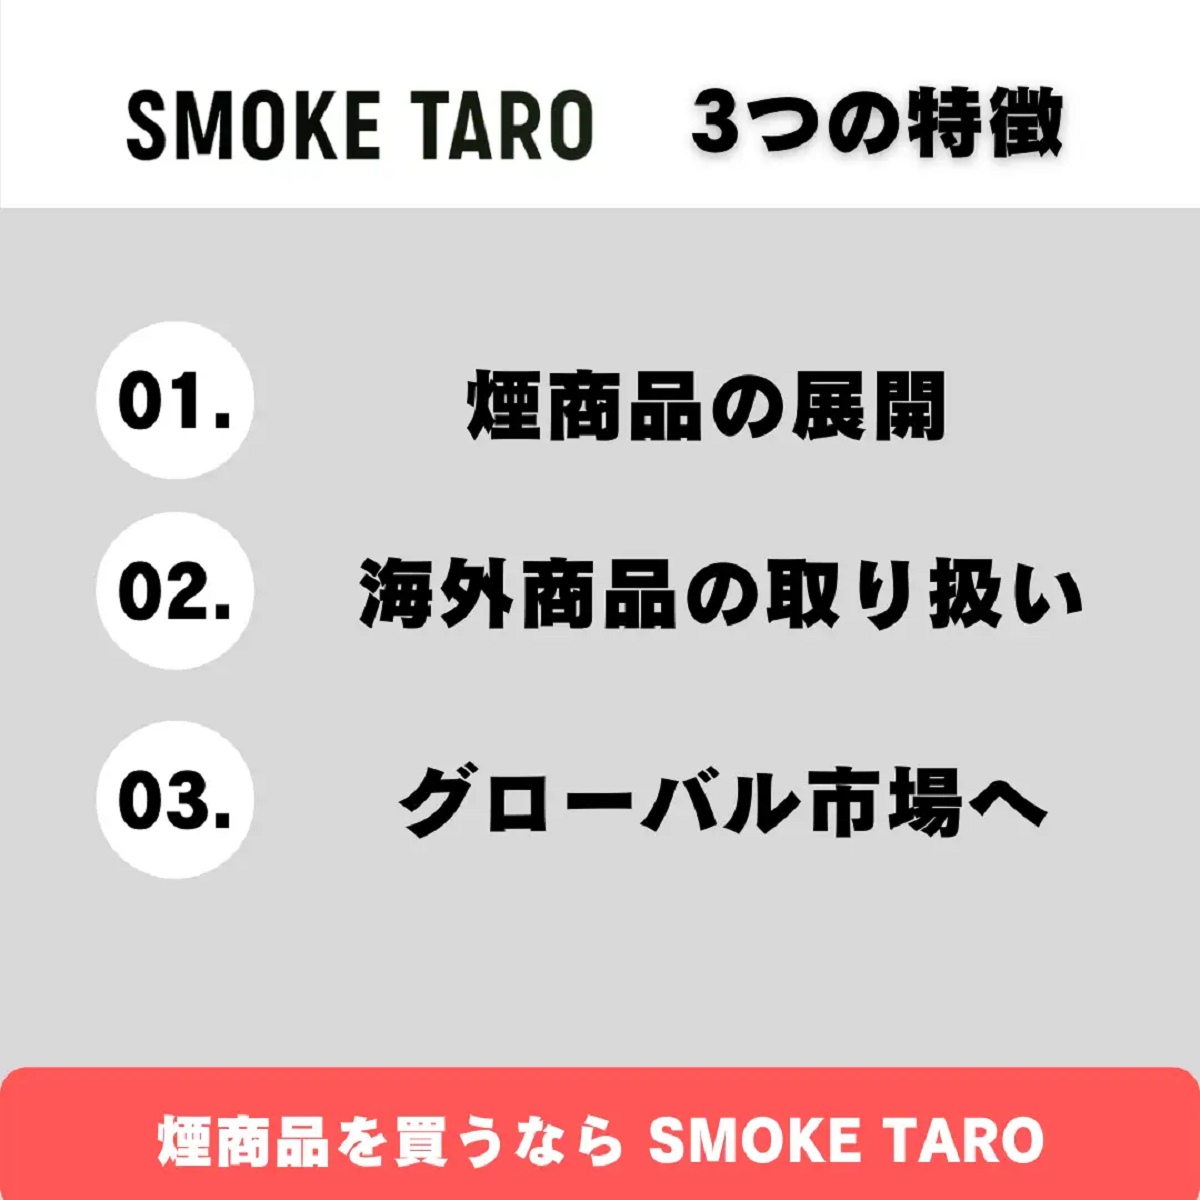 SMOKE TARO概要